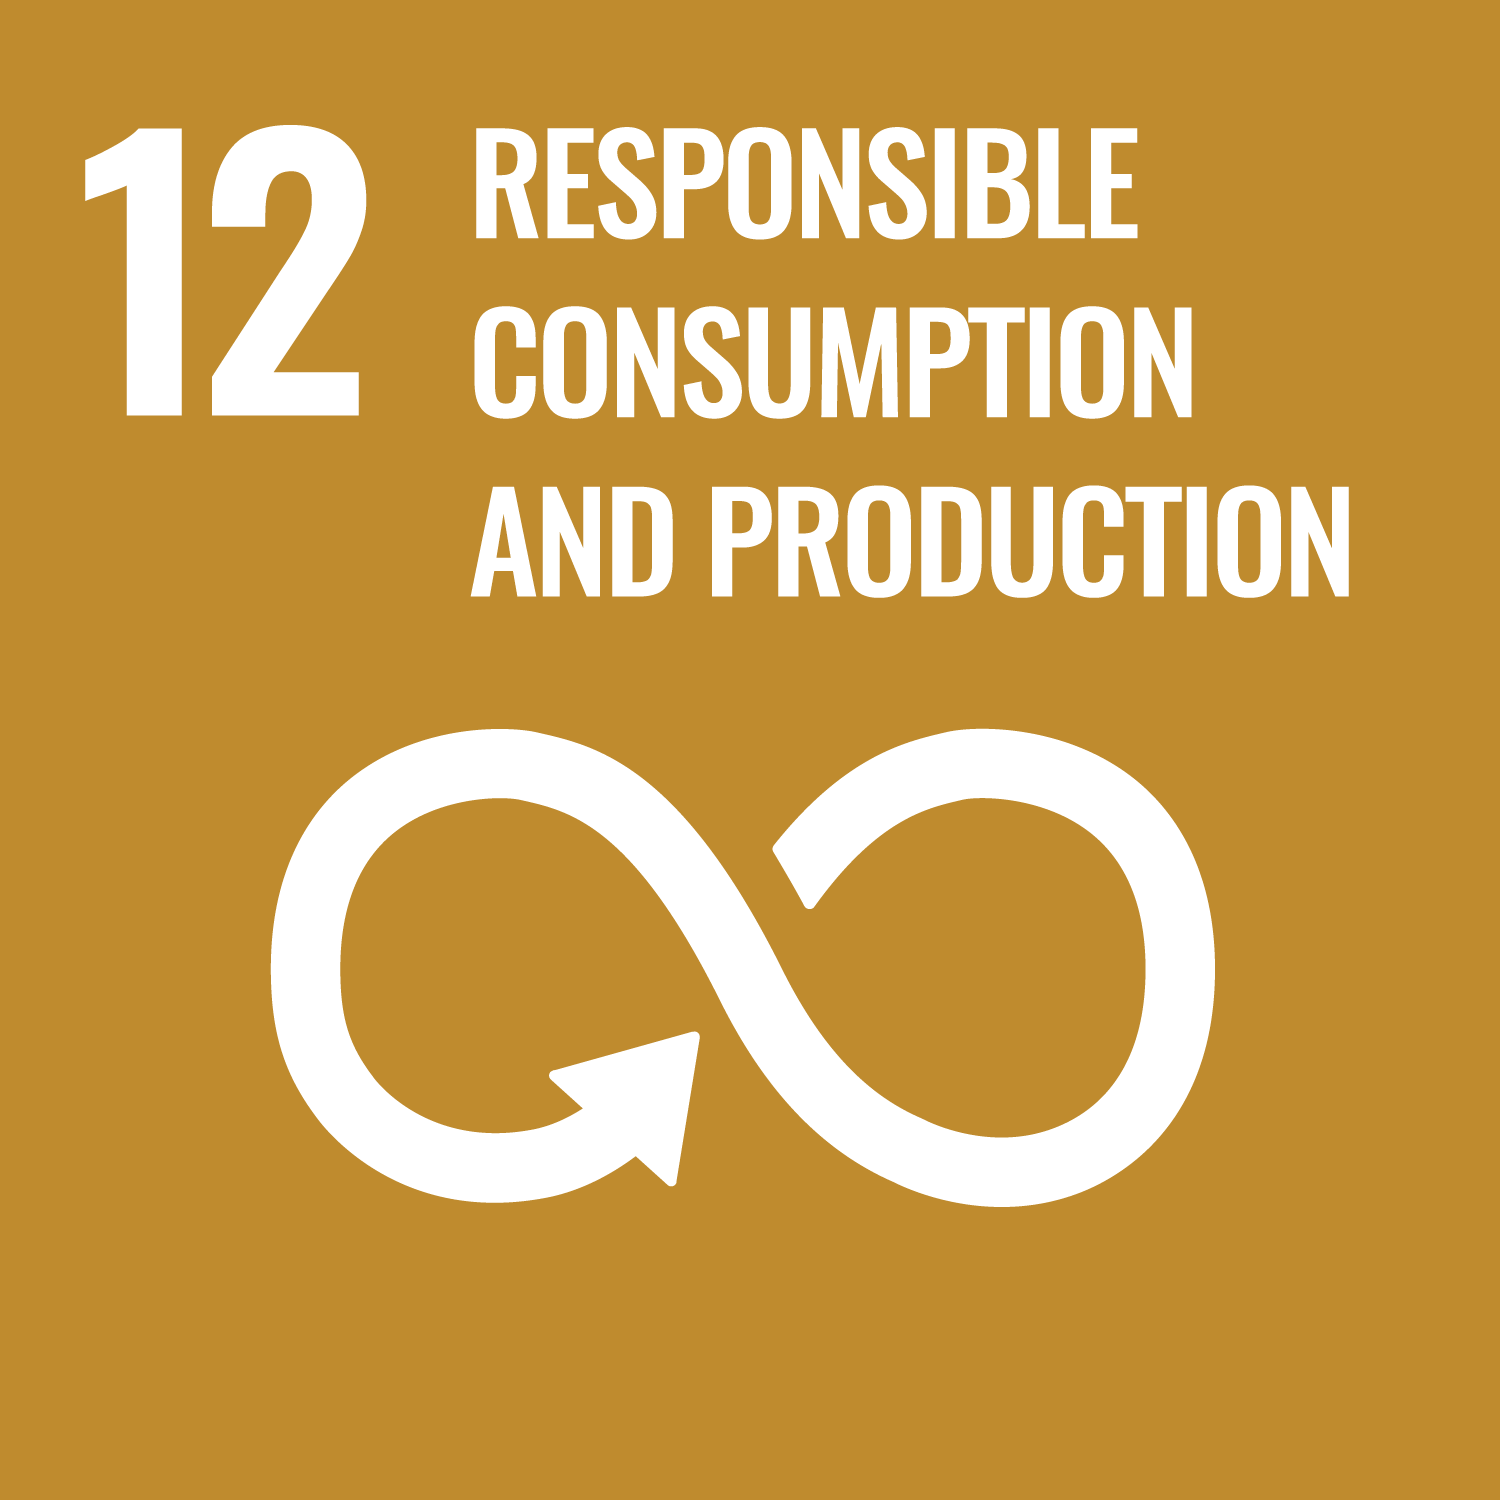 UN SDG 12 Responsible consumption and production